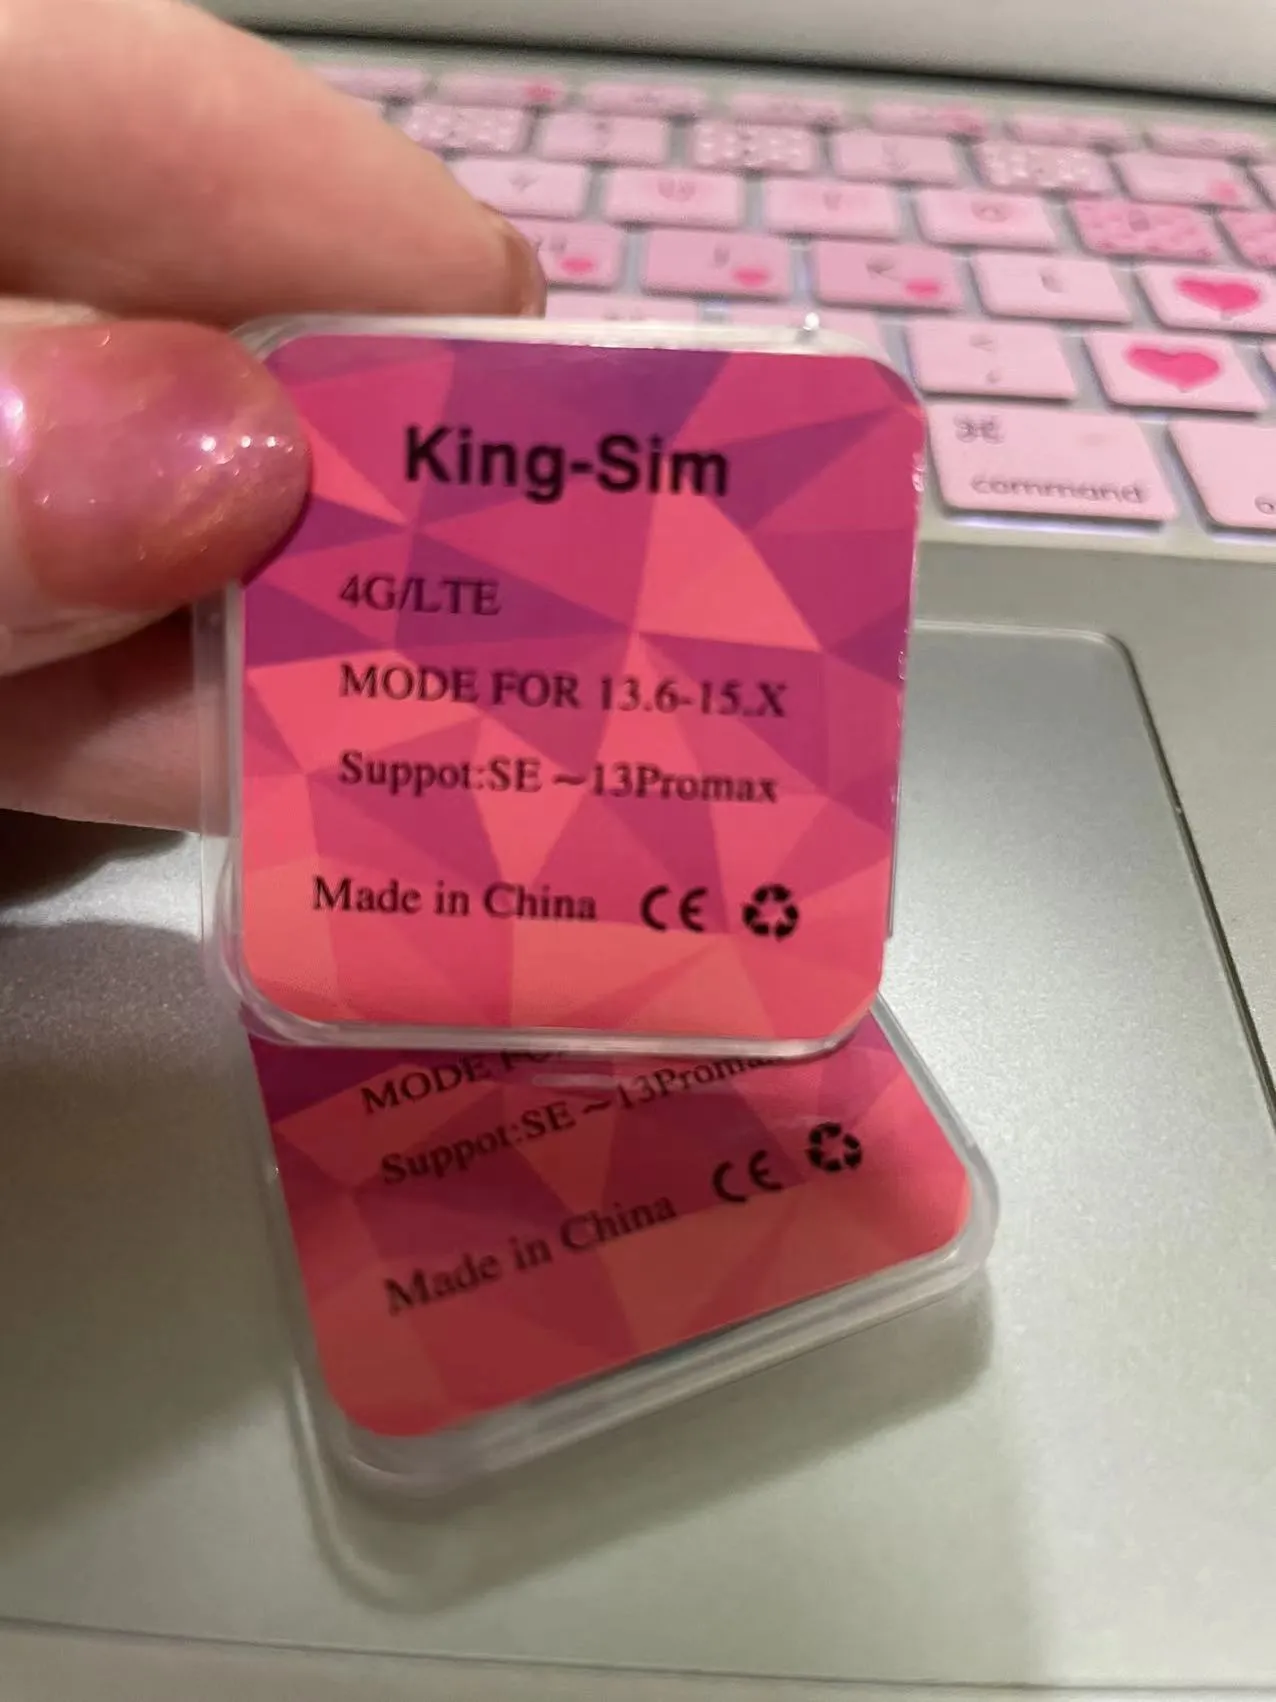 King-SIM 4GLTE suporta iOS13. X-16 X, que contém o modo modanual automático ICCID